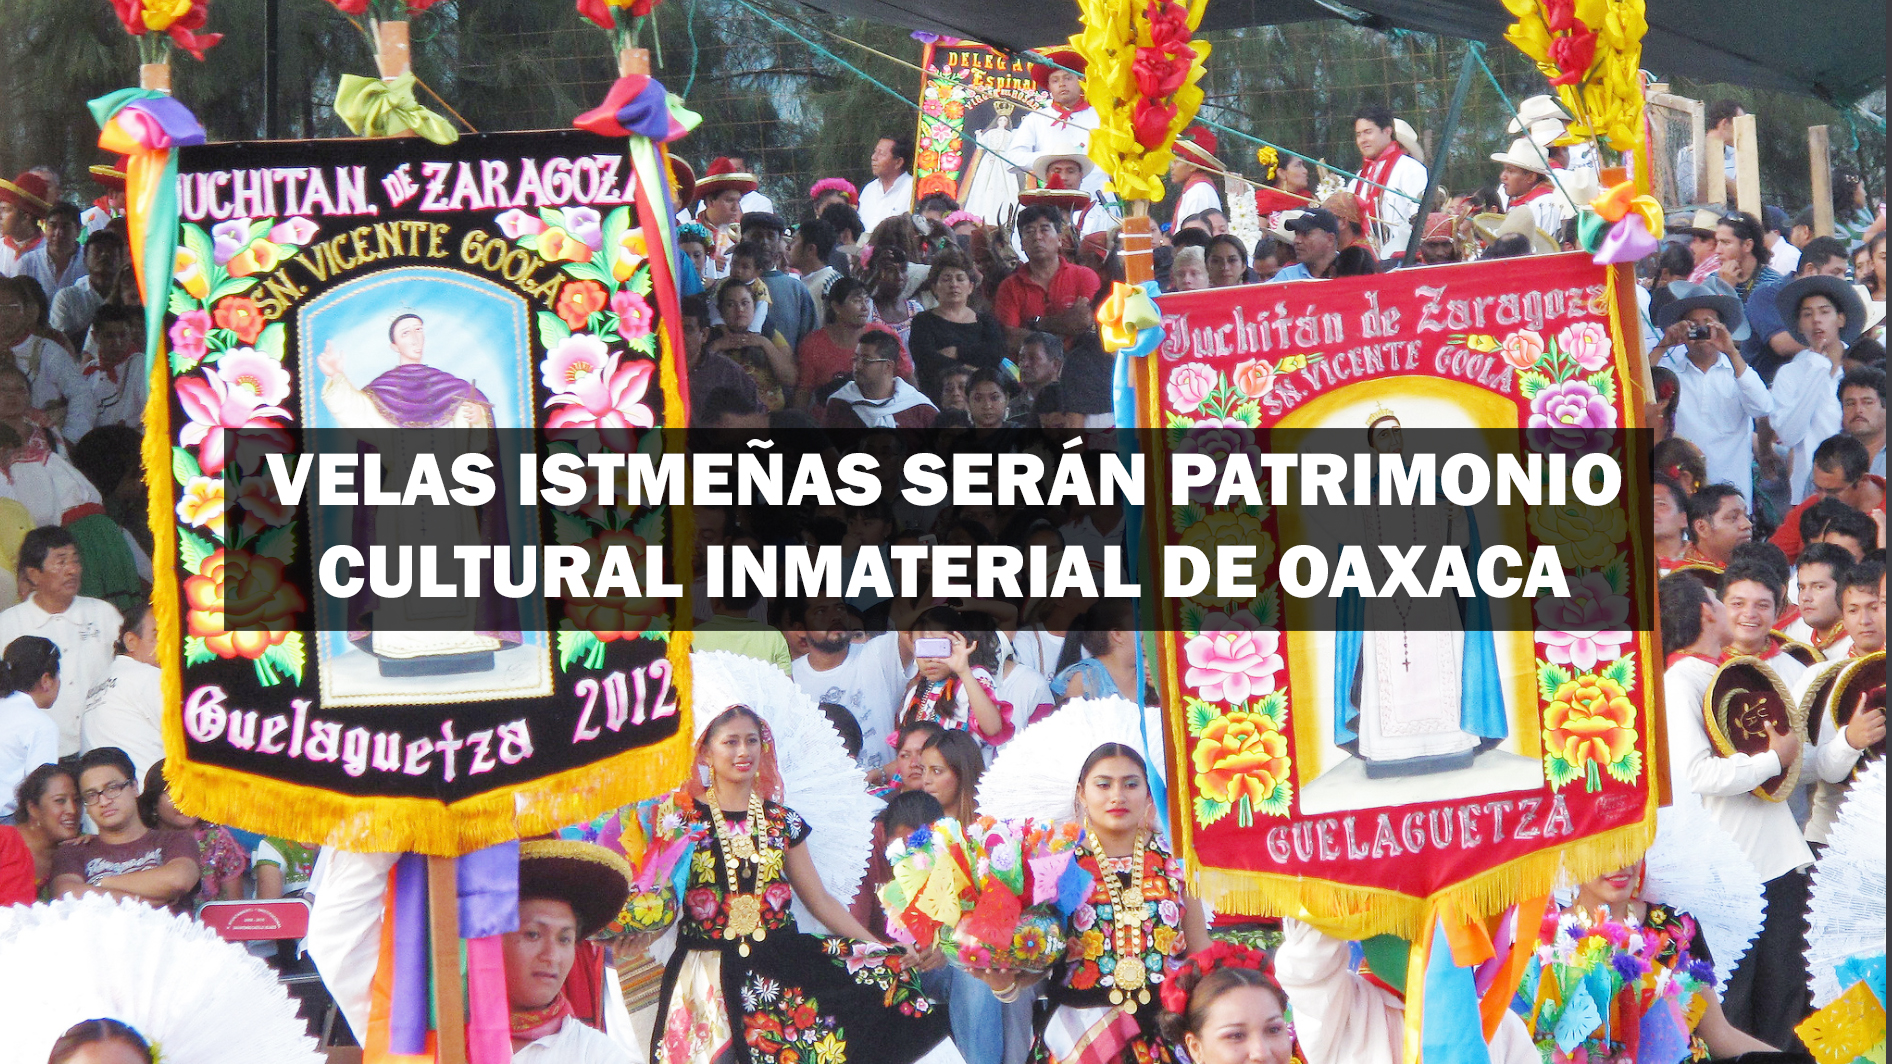 Velas istmeñas serán patrimonio cultural inmaterial de Oaxaca